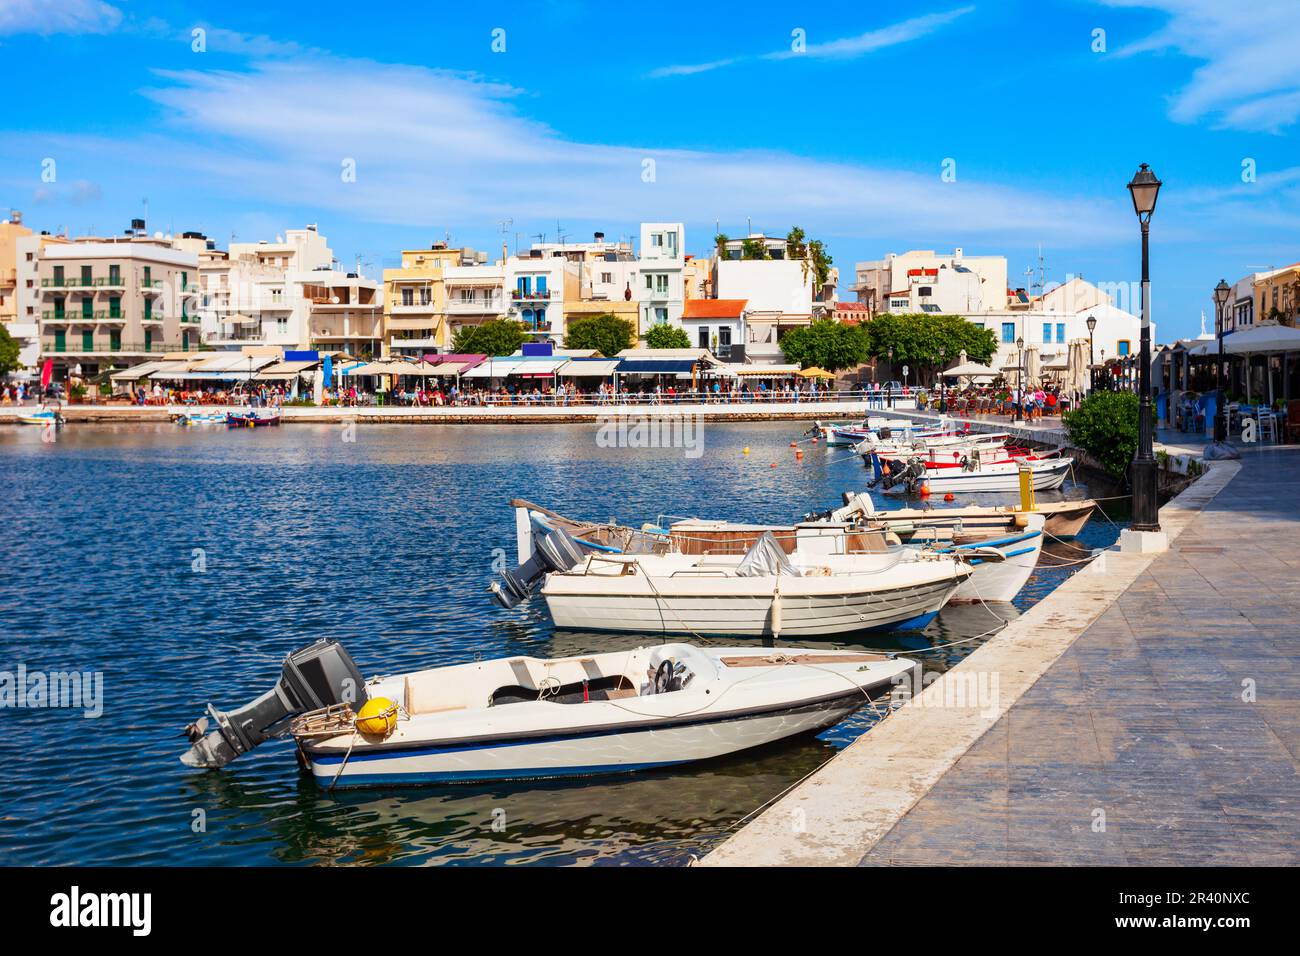 Vista panoramica aerea del porto di Agios Nikolaos. Agios, Hagios o Aghios Nikolaos è una città costiera sull'isola di Creta in Grecia. Foto Stock